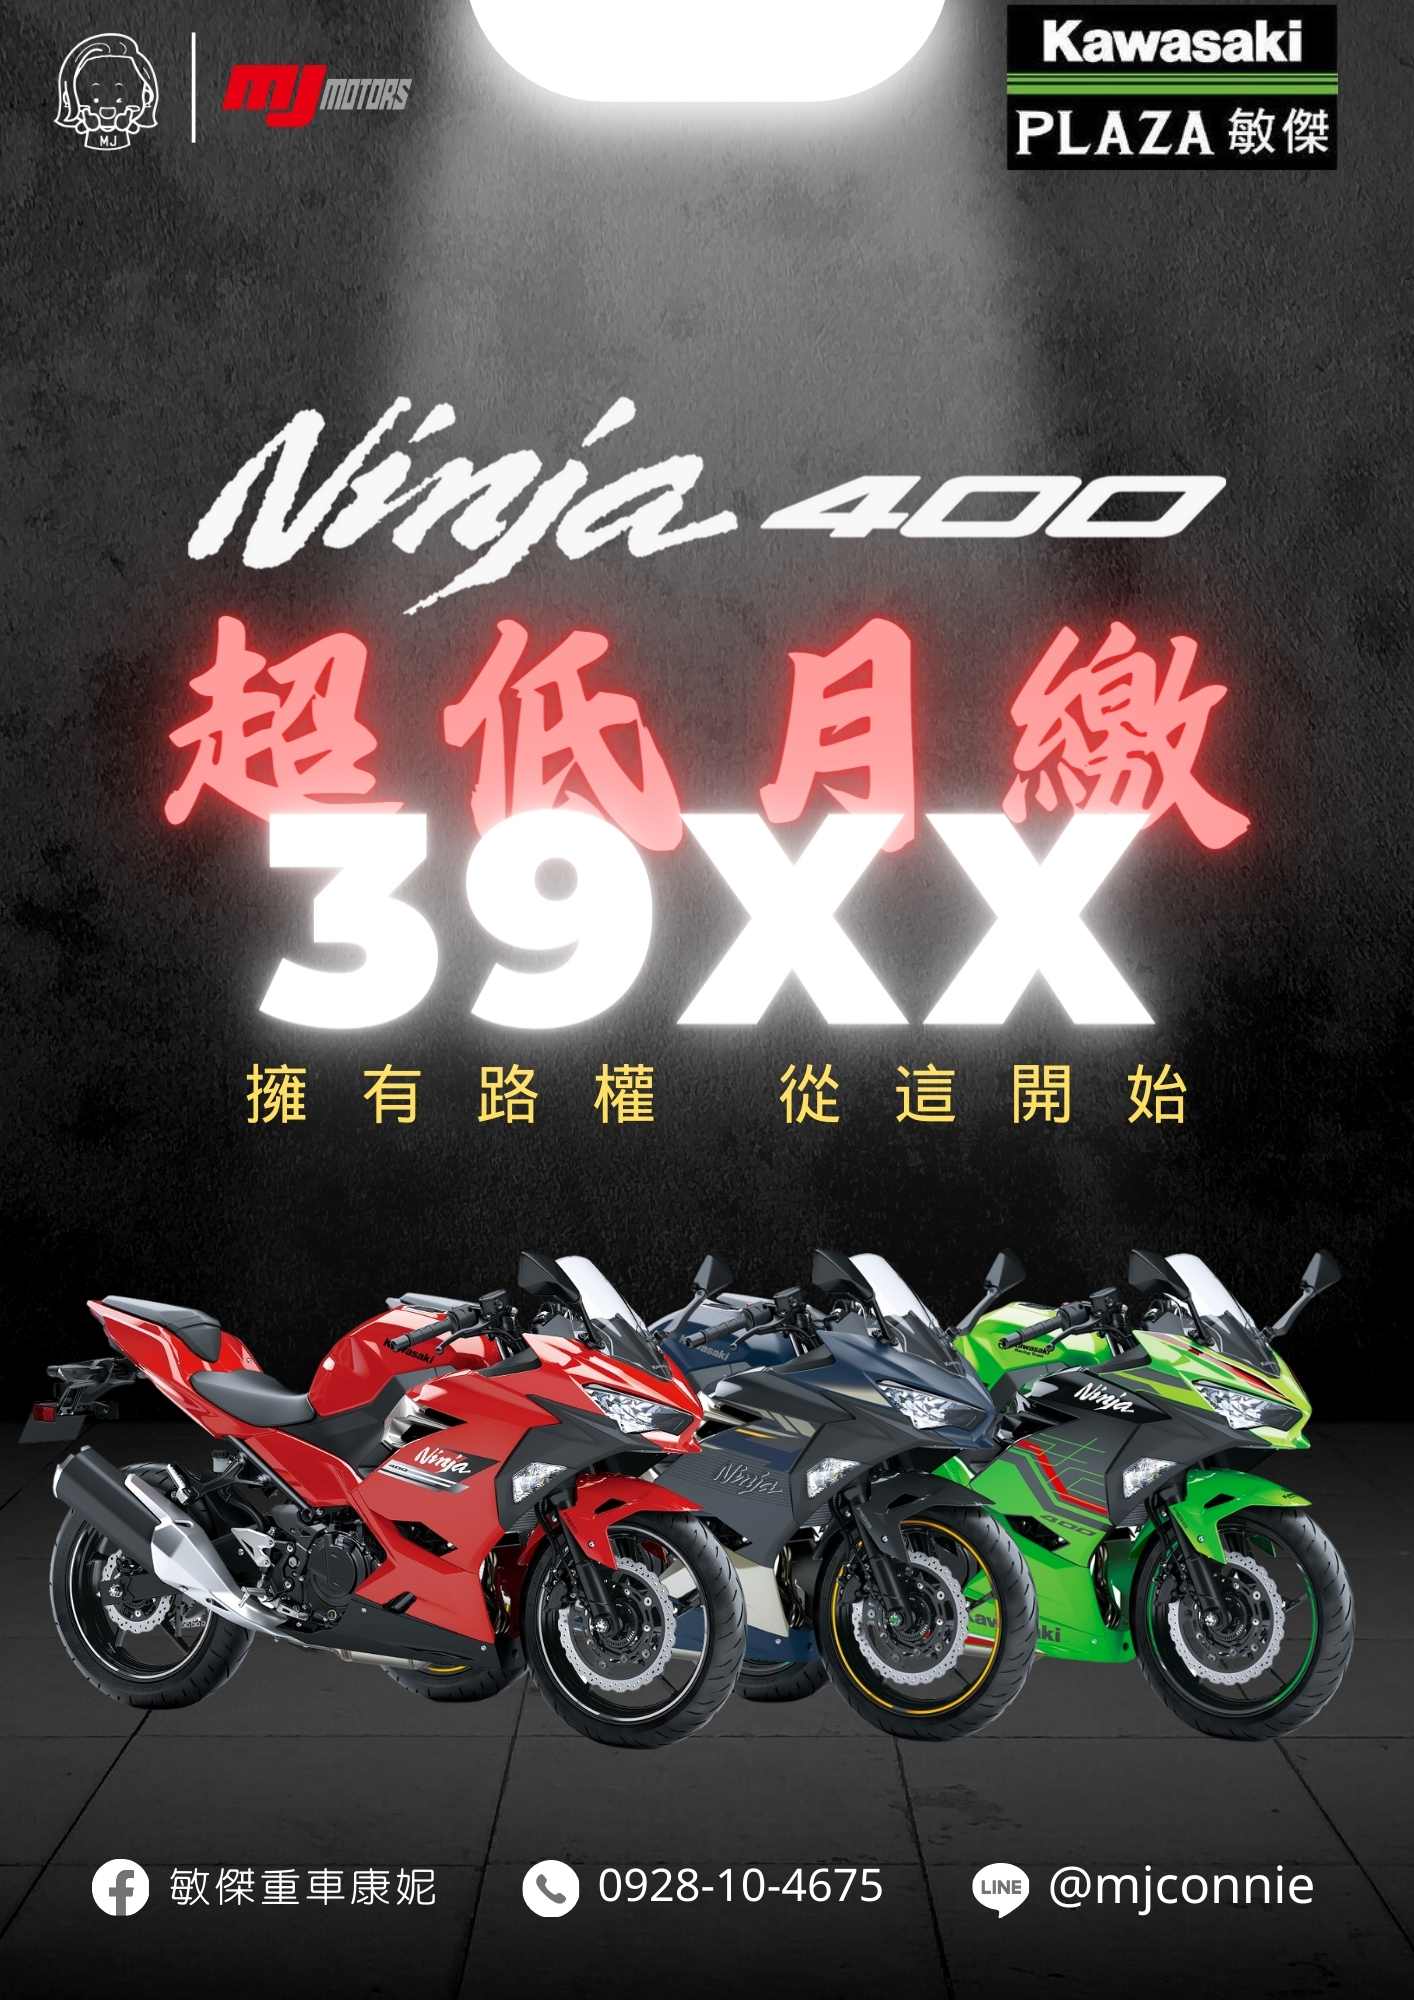 【敏傑車業資深銷售專員 康妮 Connie】KAWASAKI NINJA400 - 「Webike-摩托車市」 『敏傑康妮』拚了!!!! 頭款5000月繳39XX Kawasaki Ninja400 最優服務 就找敏傑康妮